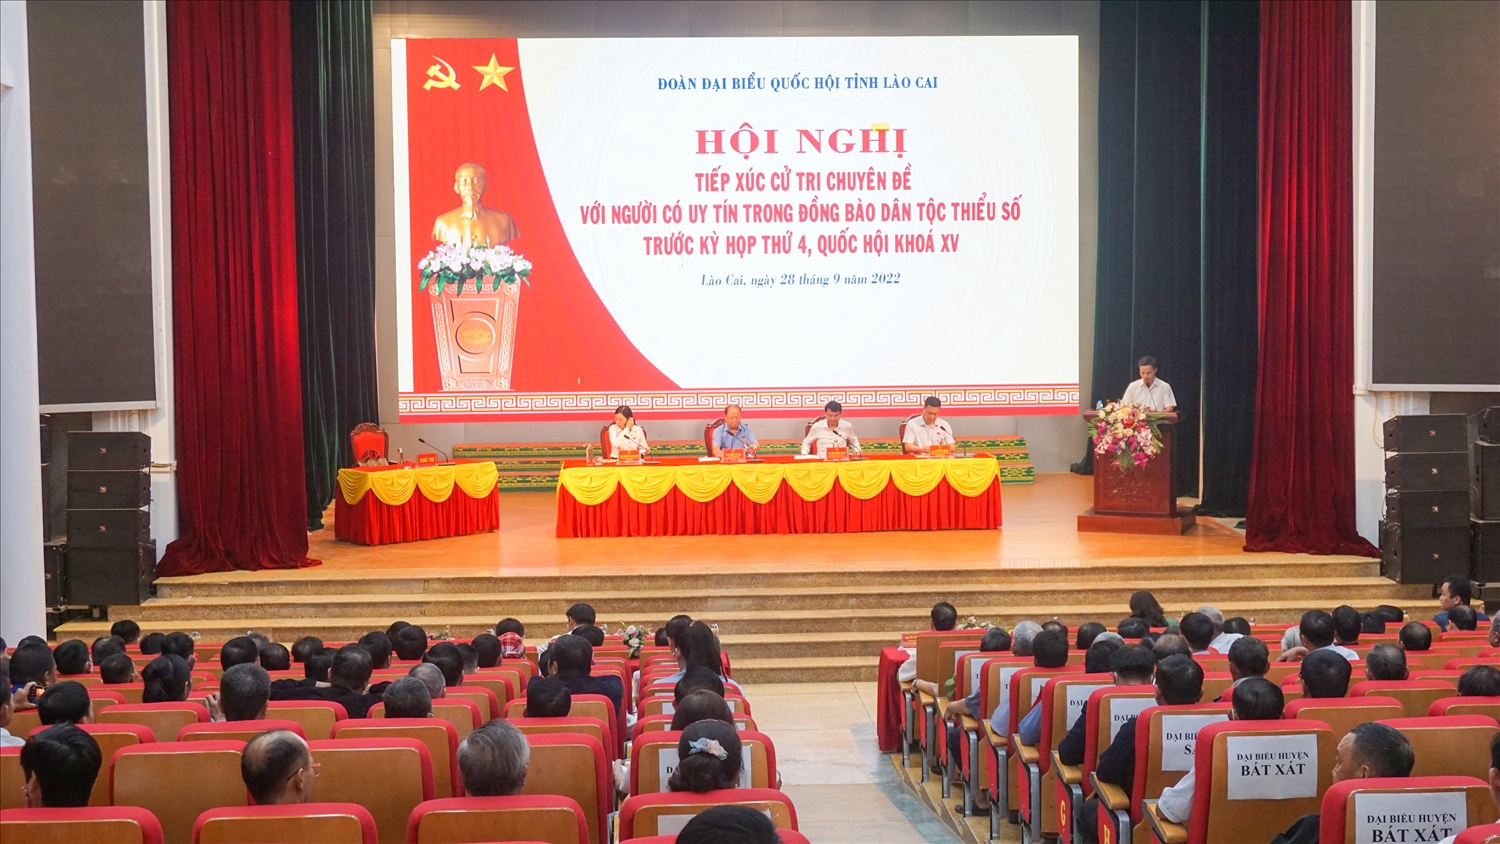 Quang cảnh hội nghị tiếp xúc cử tri giữa Đoàn đại biểu Quốc hội tỉnh Lào Cai với Người có uy tín